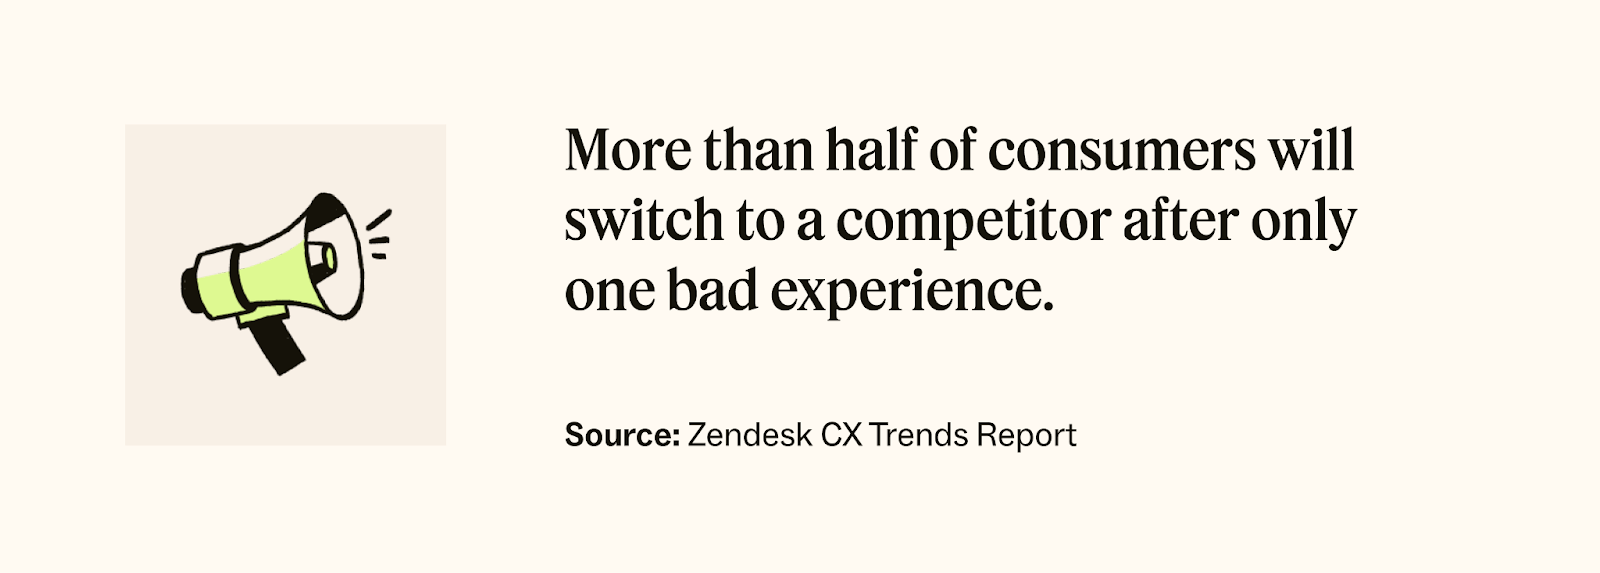 Zendesk CX Trends Report